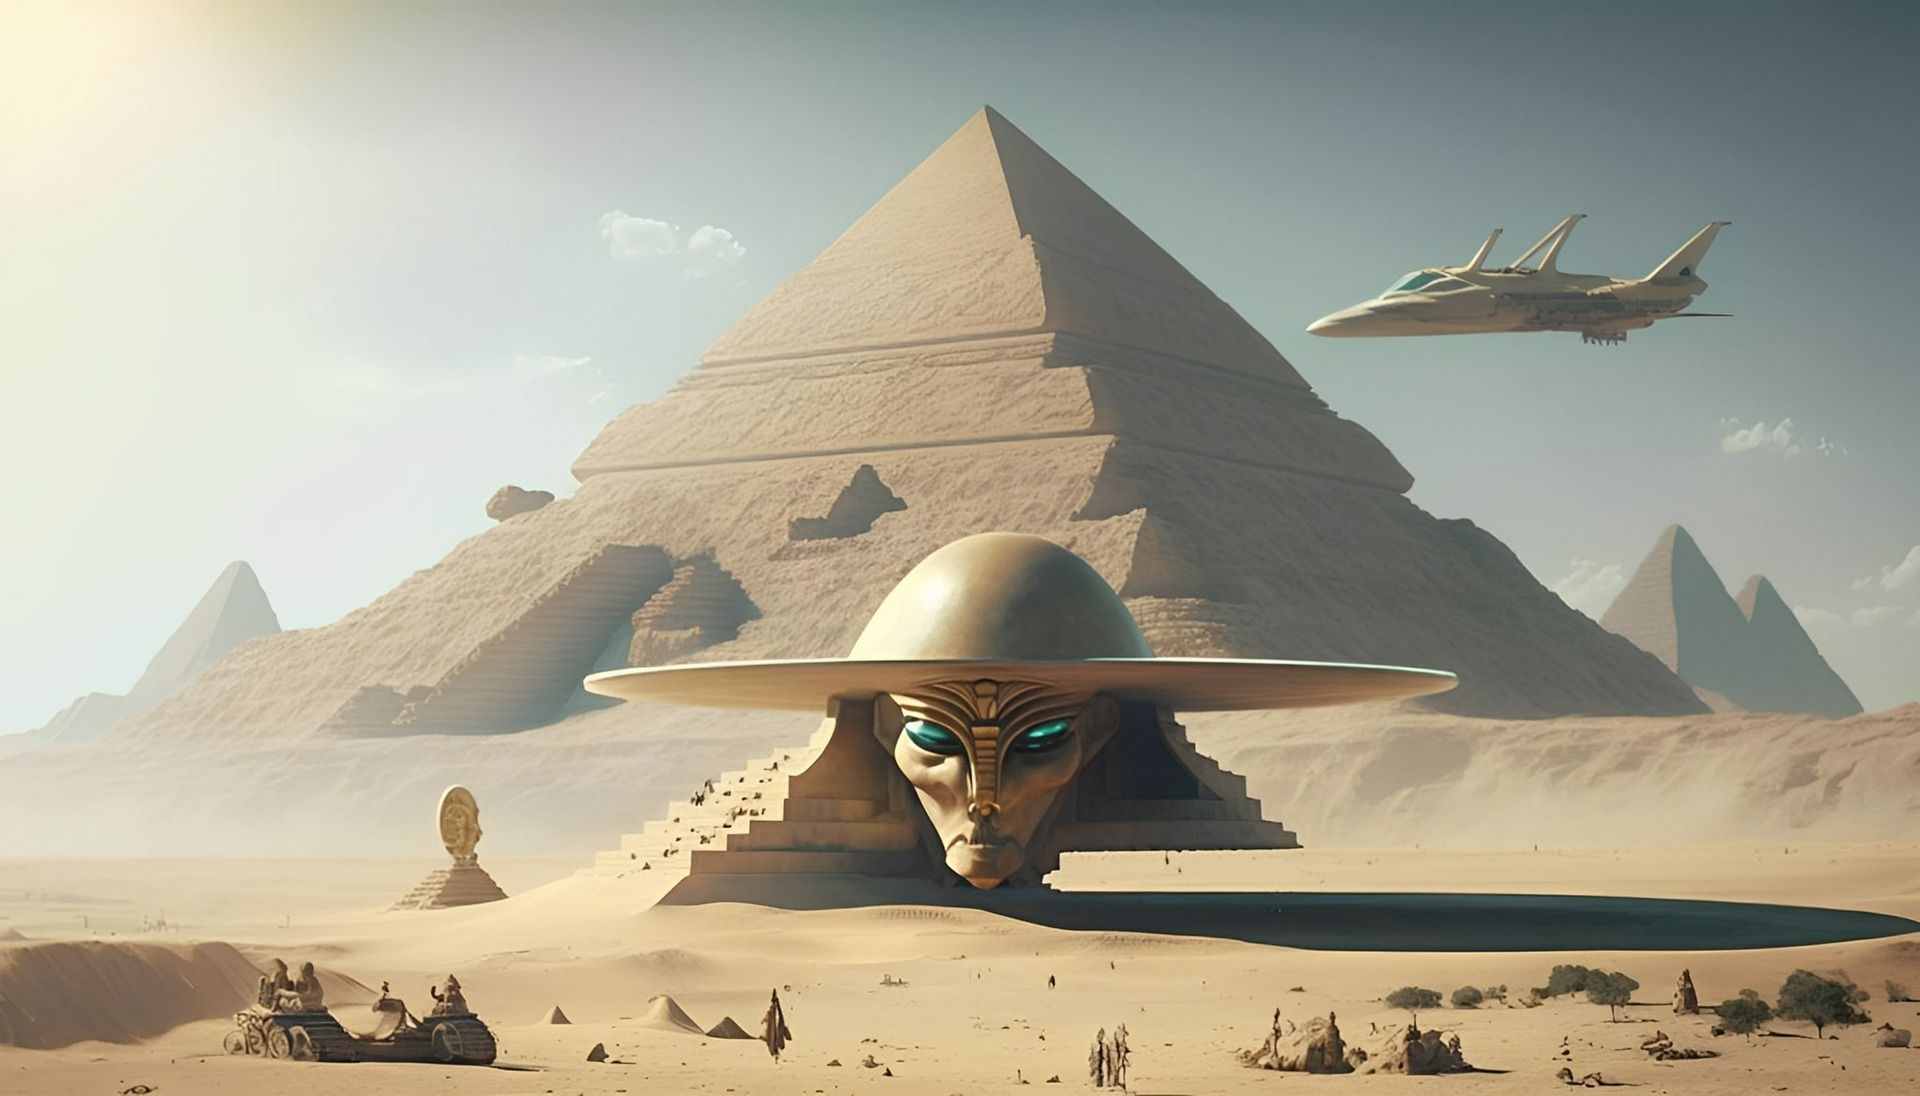 Sejarah Teori Konspirasi bahwa Piramida Mesir Kuno Dibangun oleh Alien